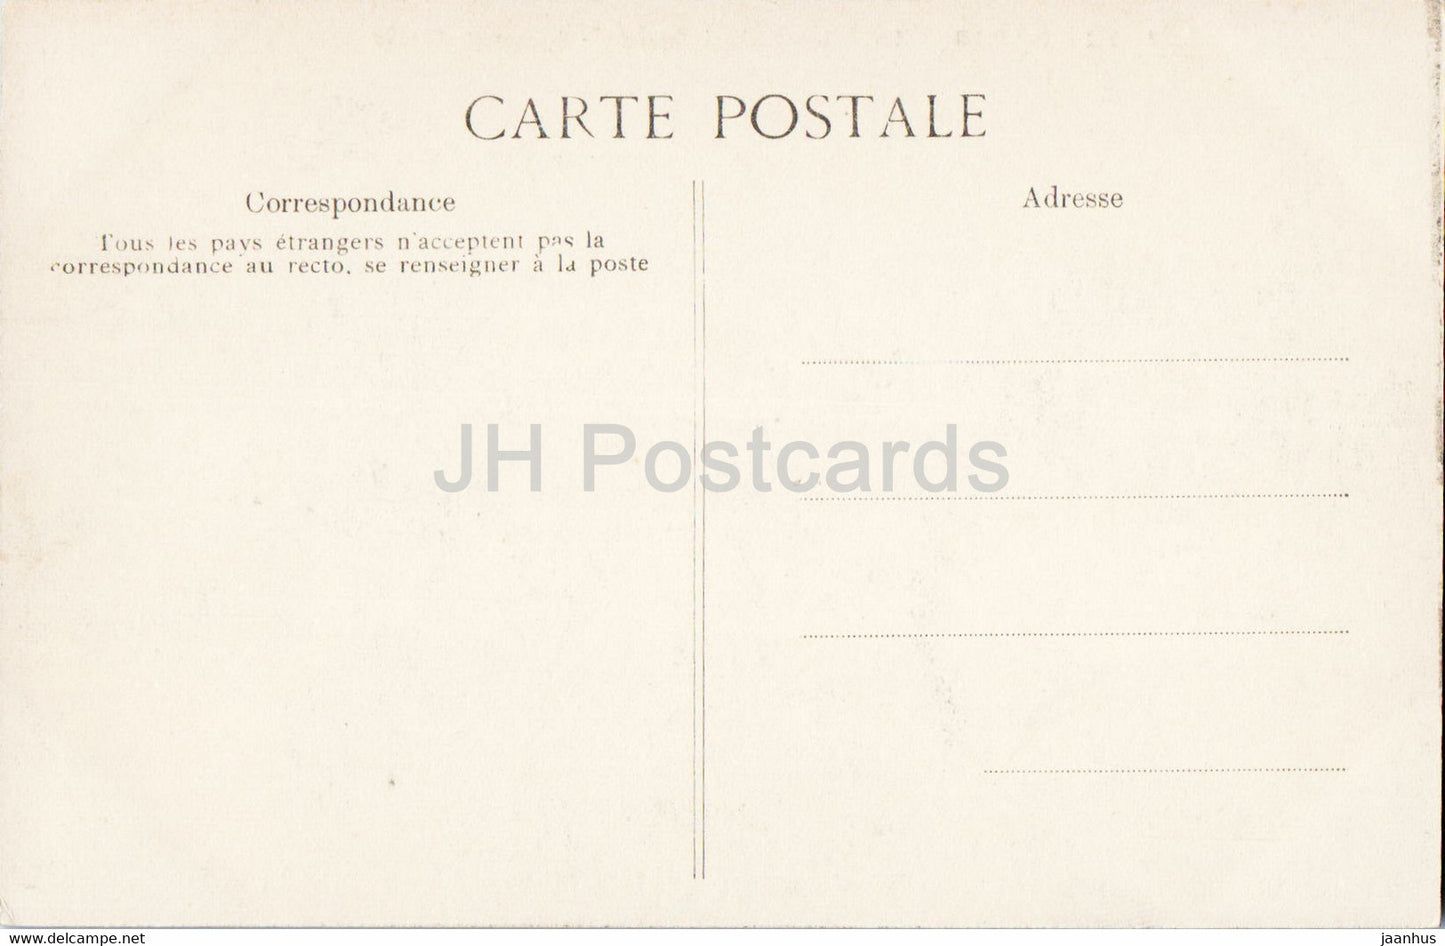 Paris - Interieur de l'Opera - Grande Salle - Opernhaus - 4272 - alte Postkarte - Frankreich - unbenutzt